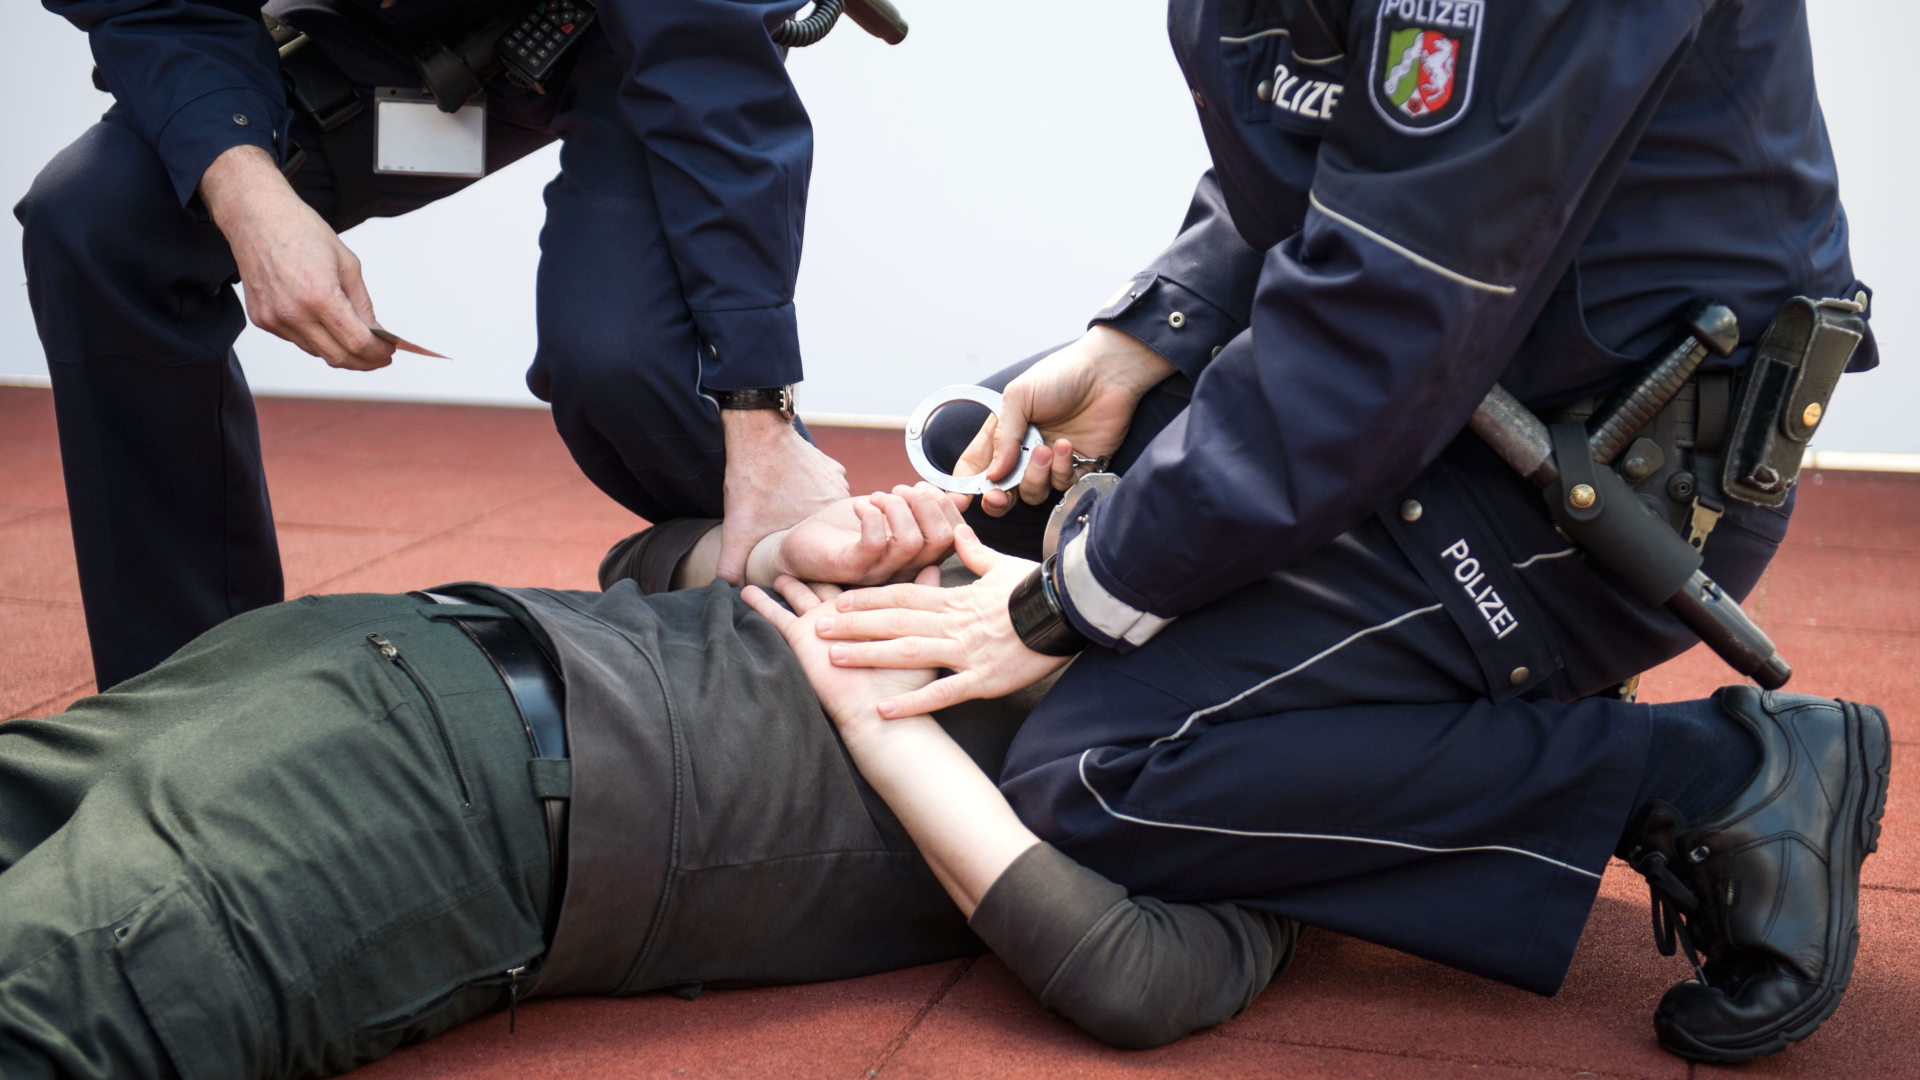 Polizisten trainieren im "Regionalen Trainingszentrum" (RTZ) der Polizei in Dortmund (Nordrhein-Westfalen) eine Festnahme.  | dpa